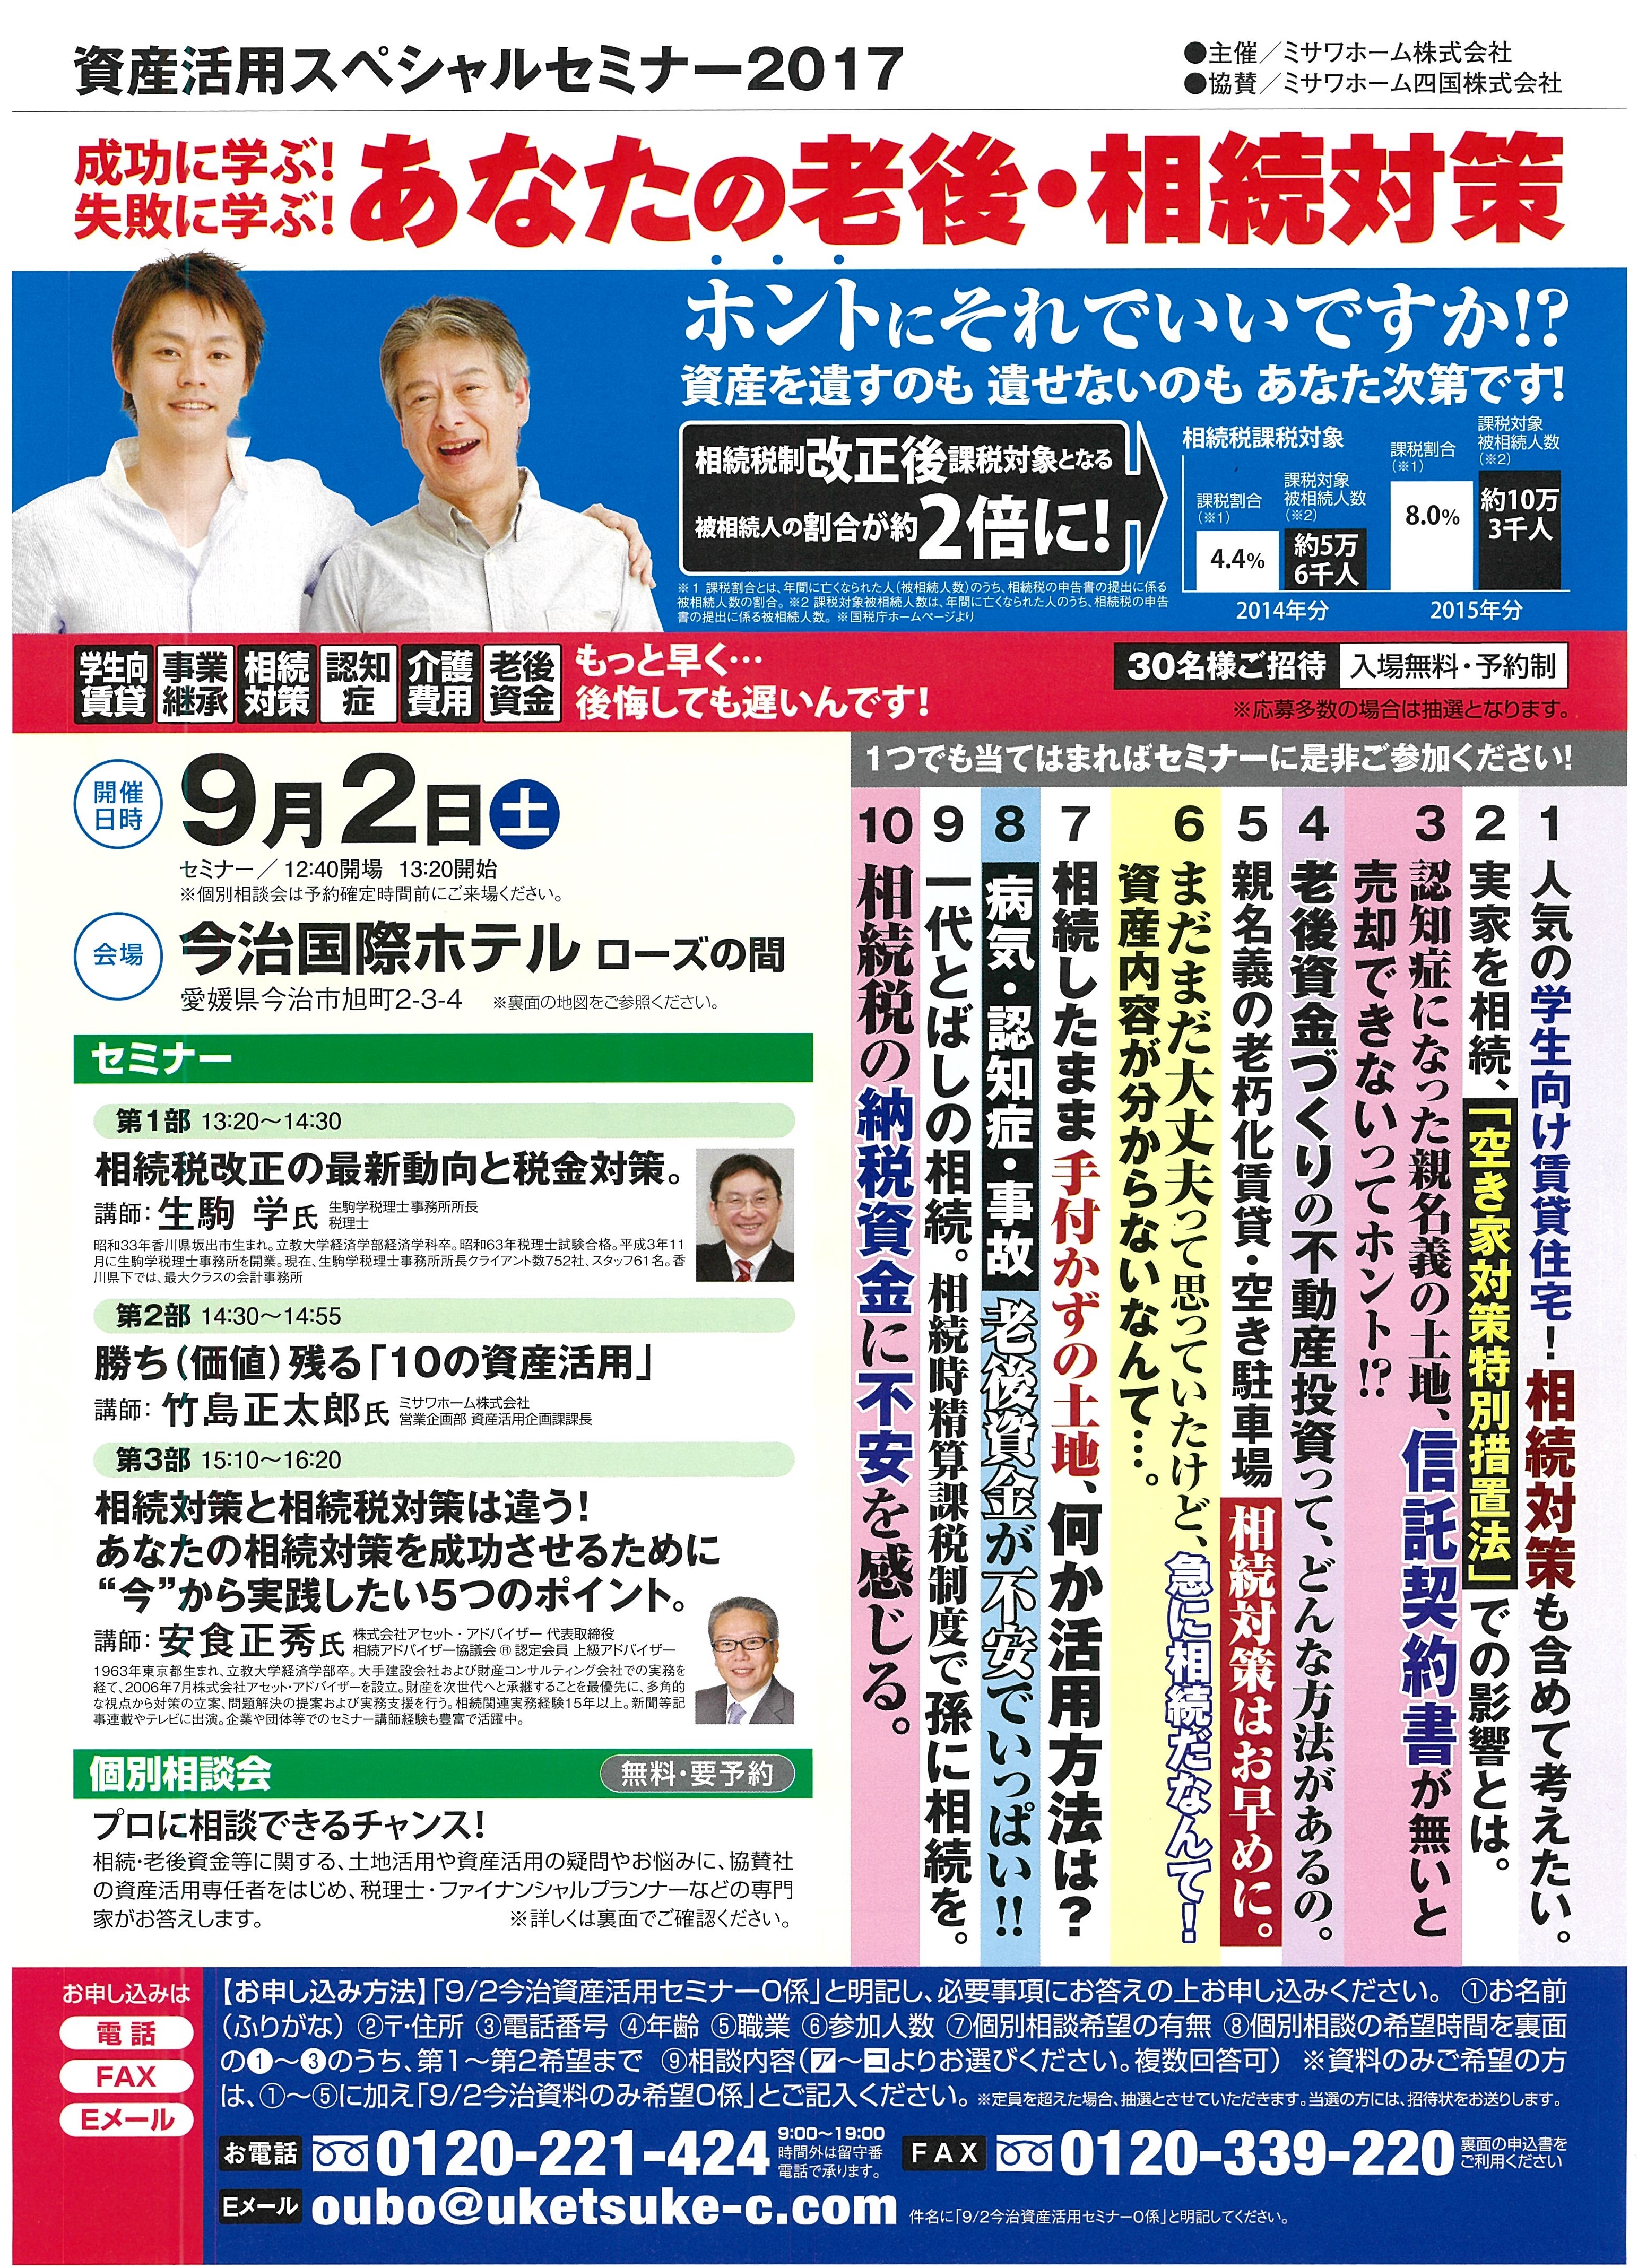 http://shikoku.misawa.co.jp/blg_ms/%E3%83%81%E3%83%A9%E3%82%B71.jpg